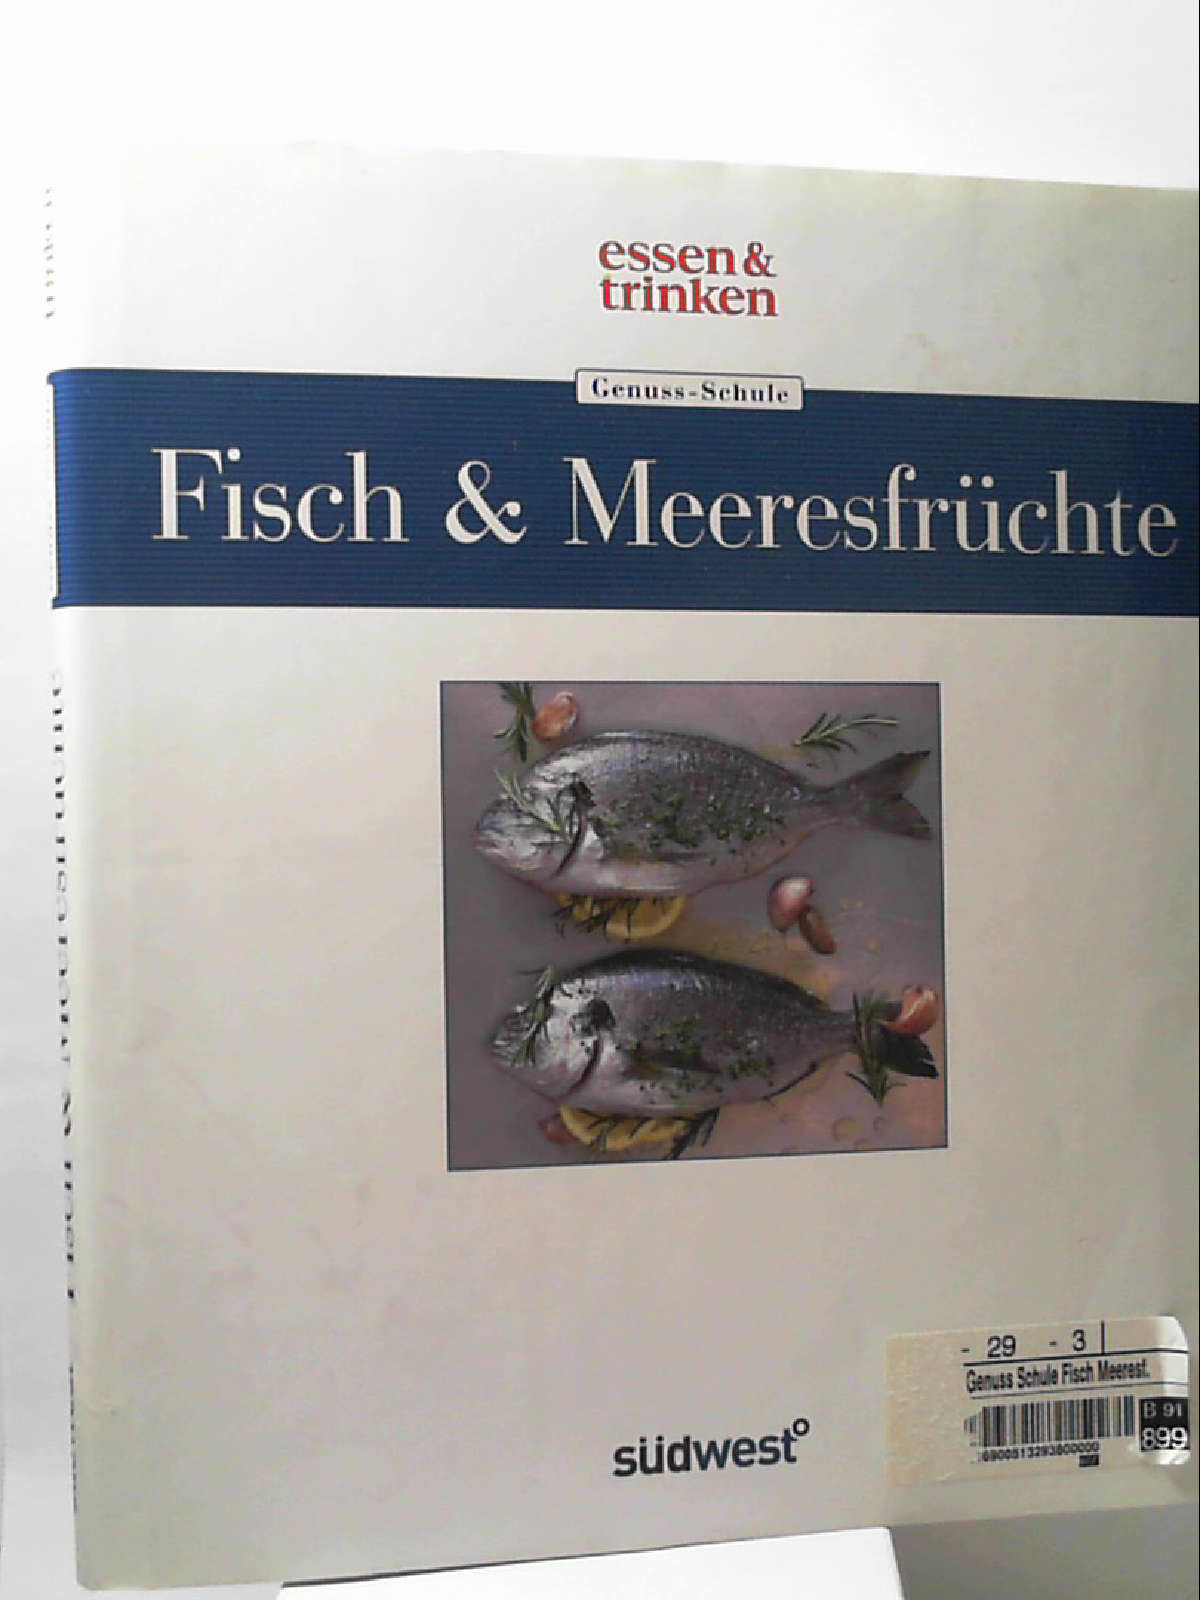 Genuss-Schule Fisch & Meeresfrüchte essen & trinken - essen & trinken